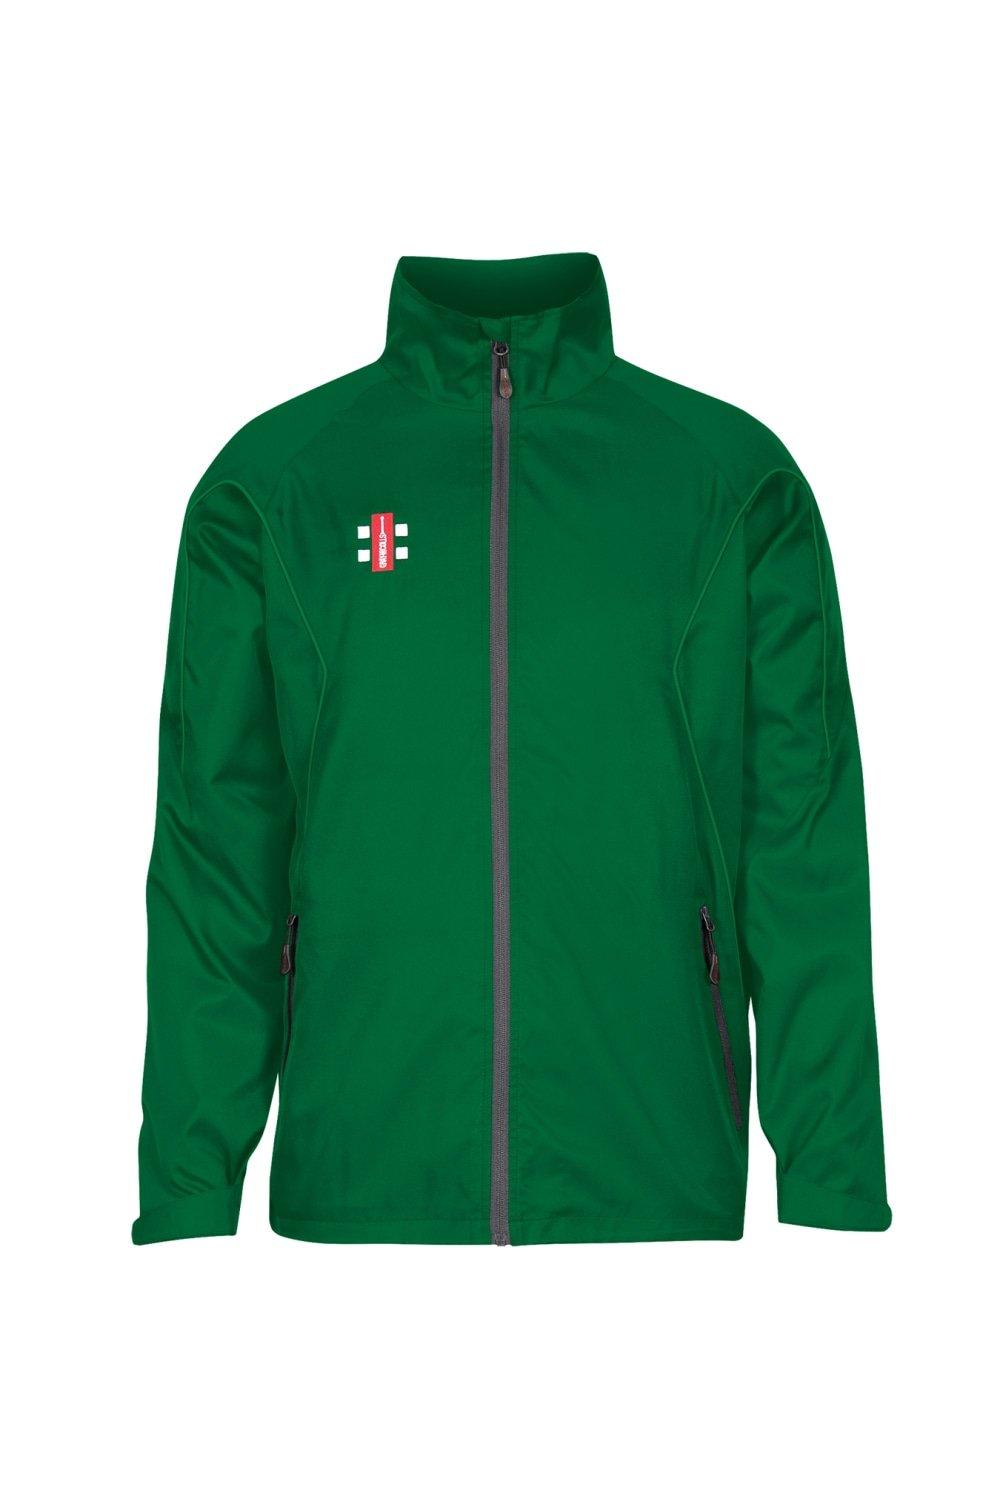 Тренировочная куртка Storm Gray-Nicolls, зеленый топ bershka 42 44 размер